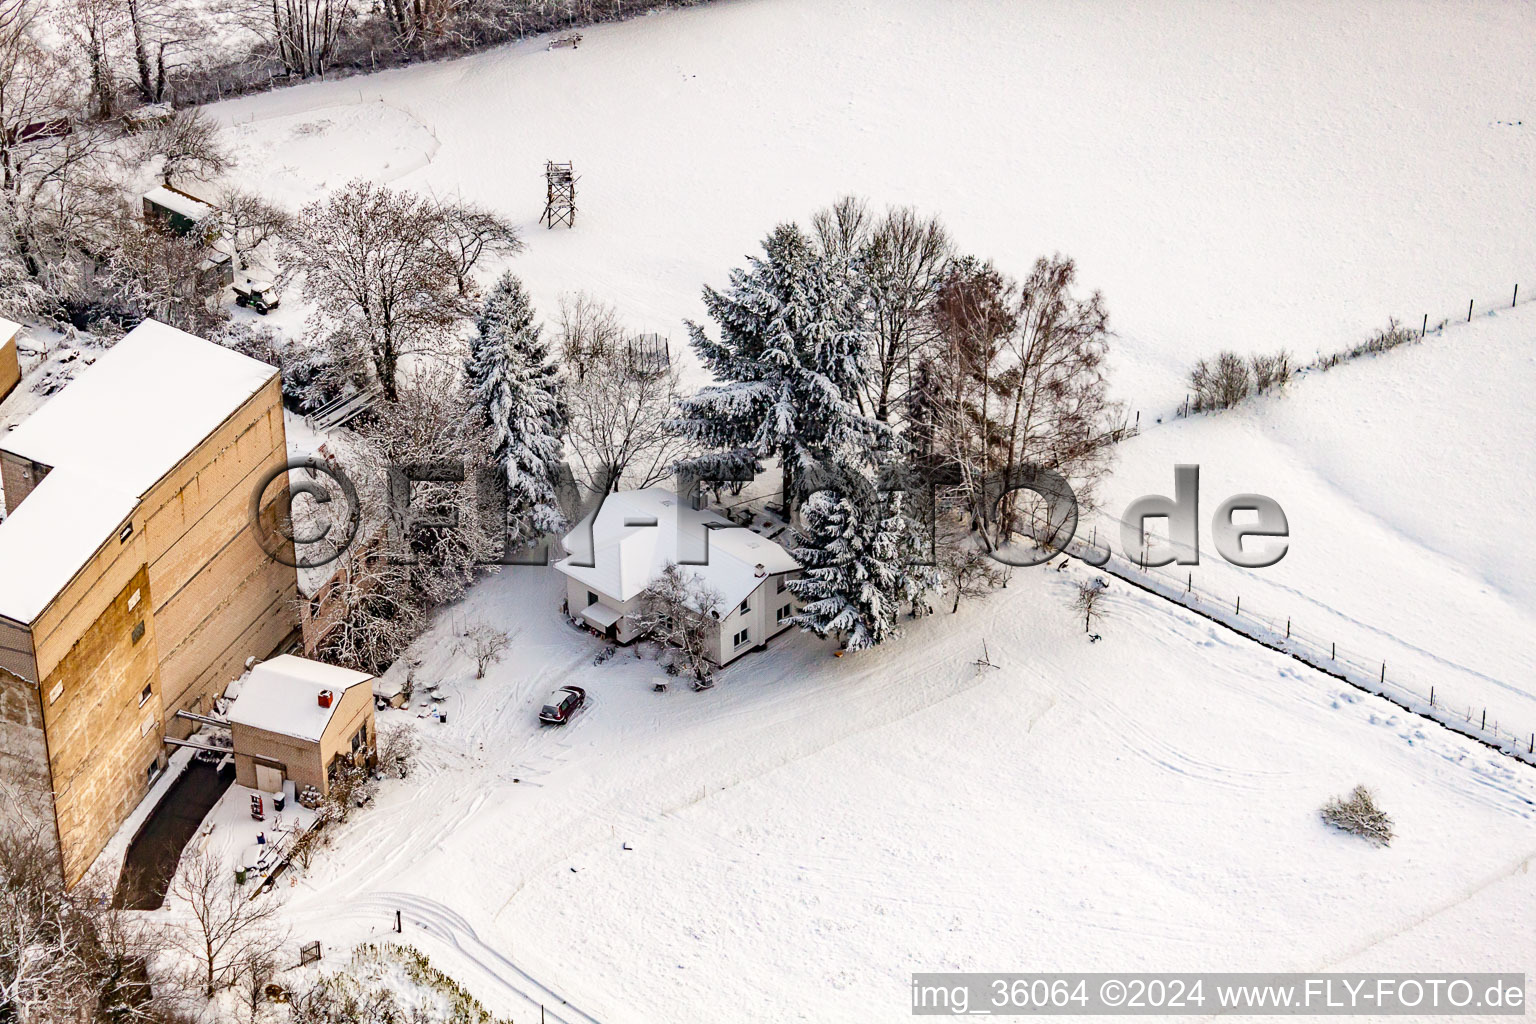 Hardtmühle im Winter bei Schnee in Kandel im Bundesland Rheinland-Pfalz, Deutschland